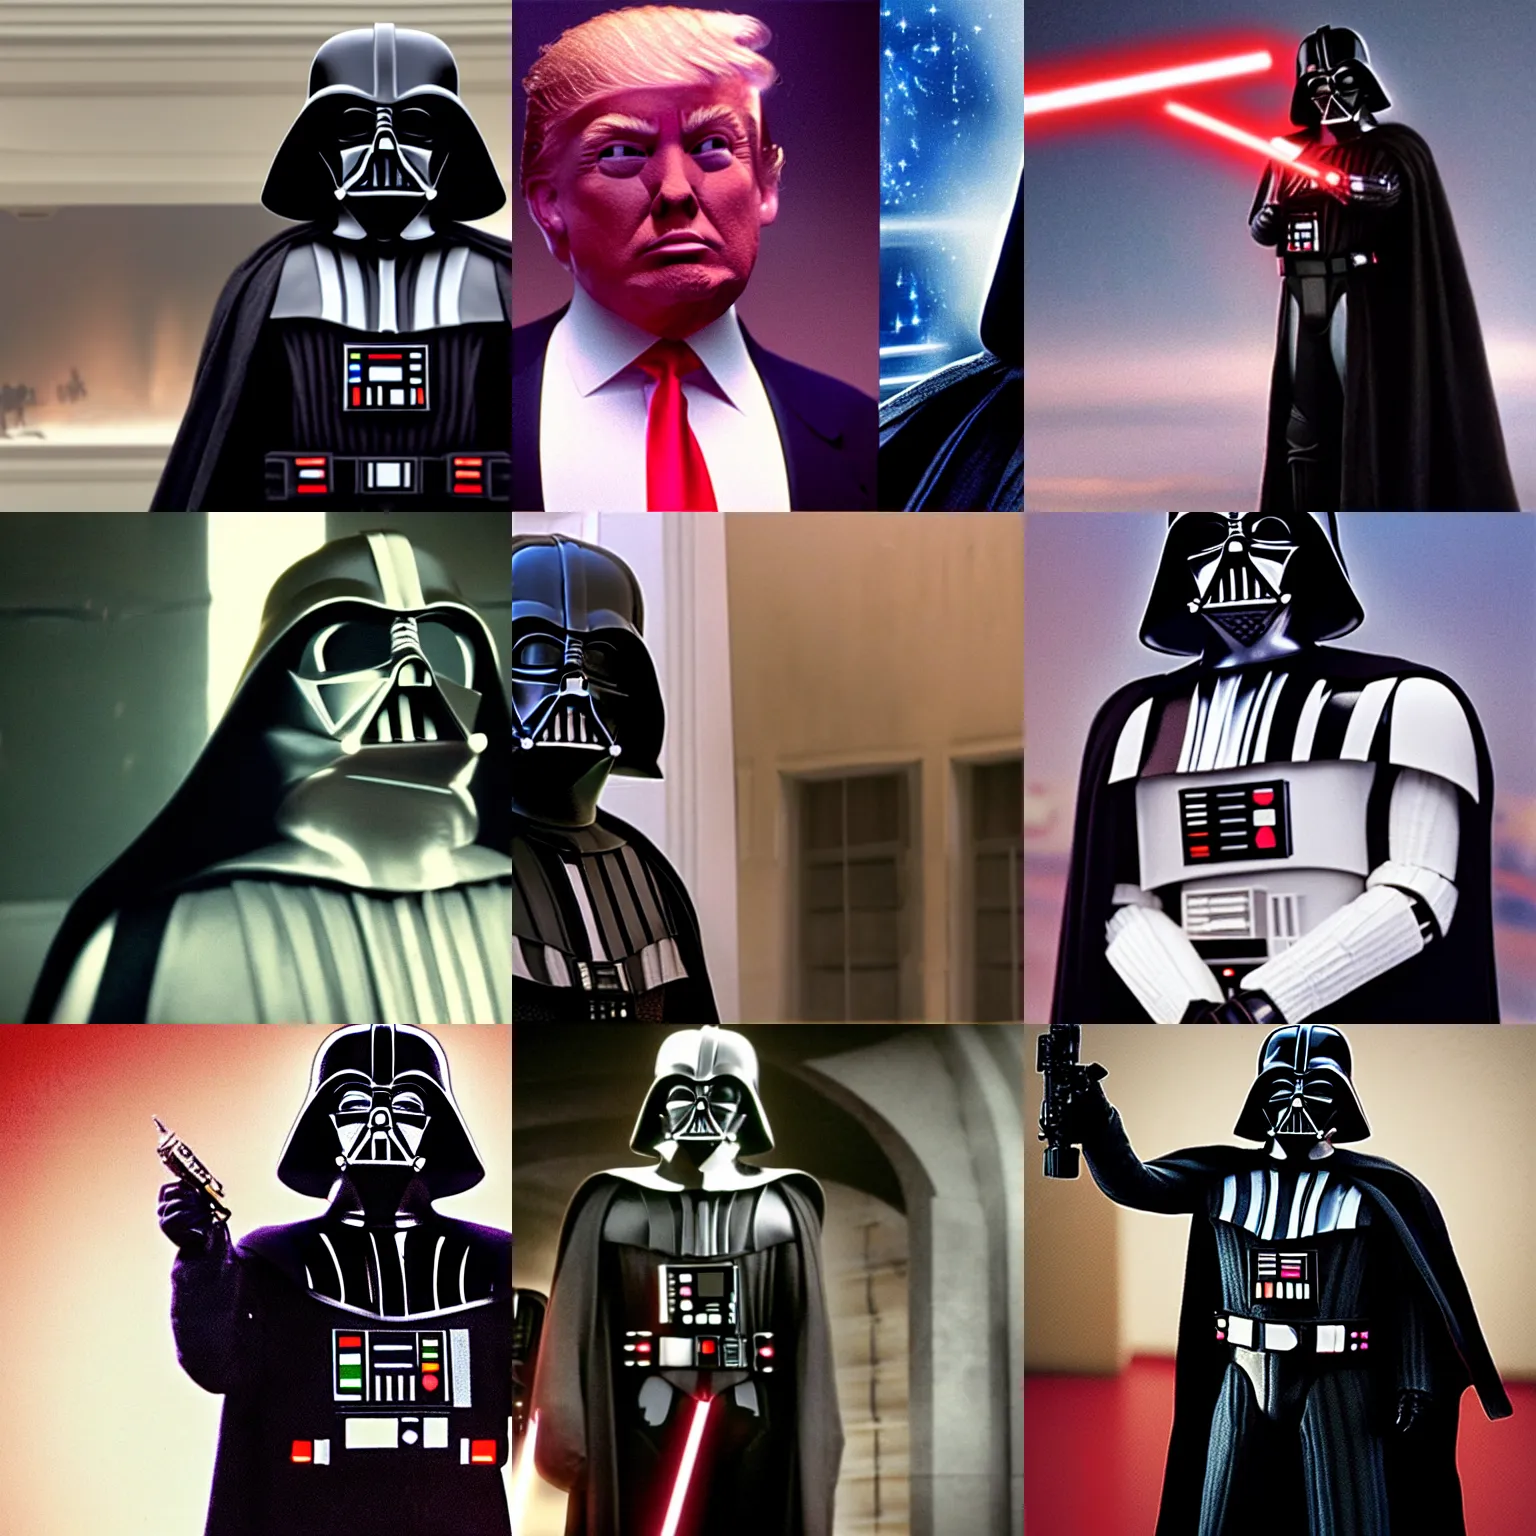 Prompt: film still from star wars Donald Trump as Darth Vader